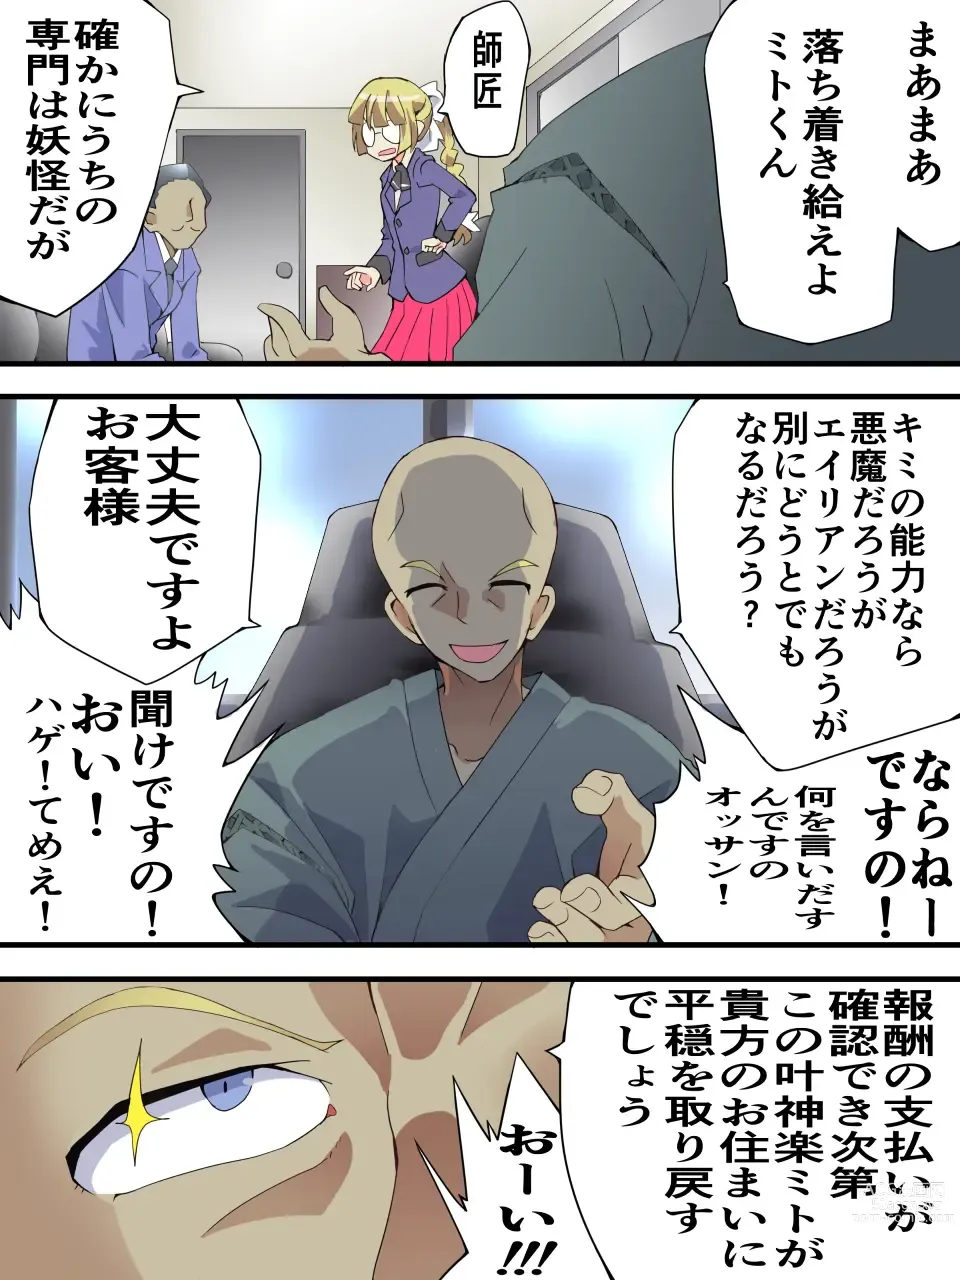 Page 5 of doujinshi Mysterious Detective Mito Kano Kagura Comes ~Detective vs Devil Worshiper~